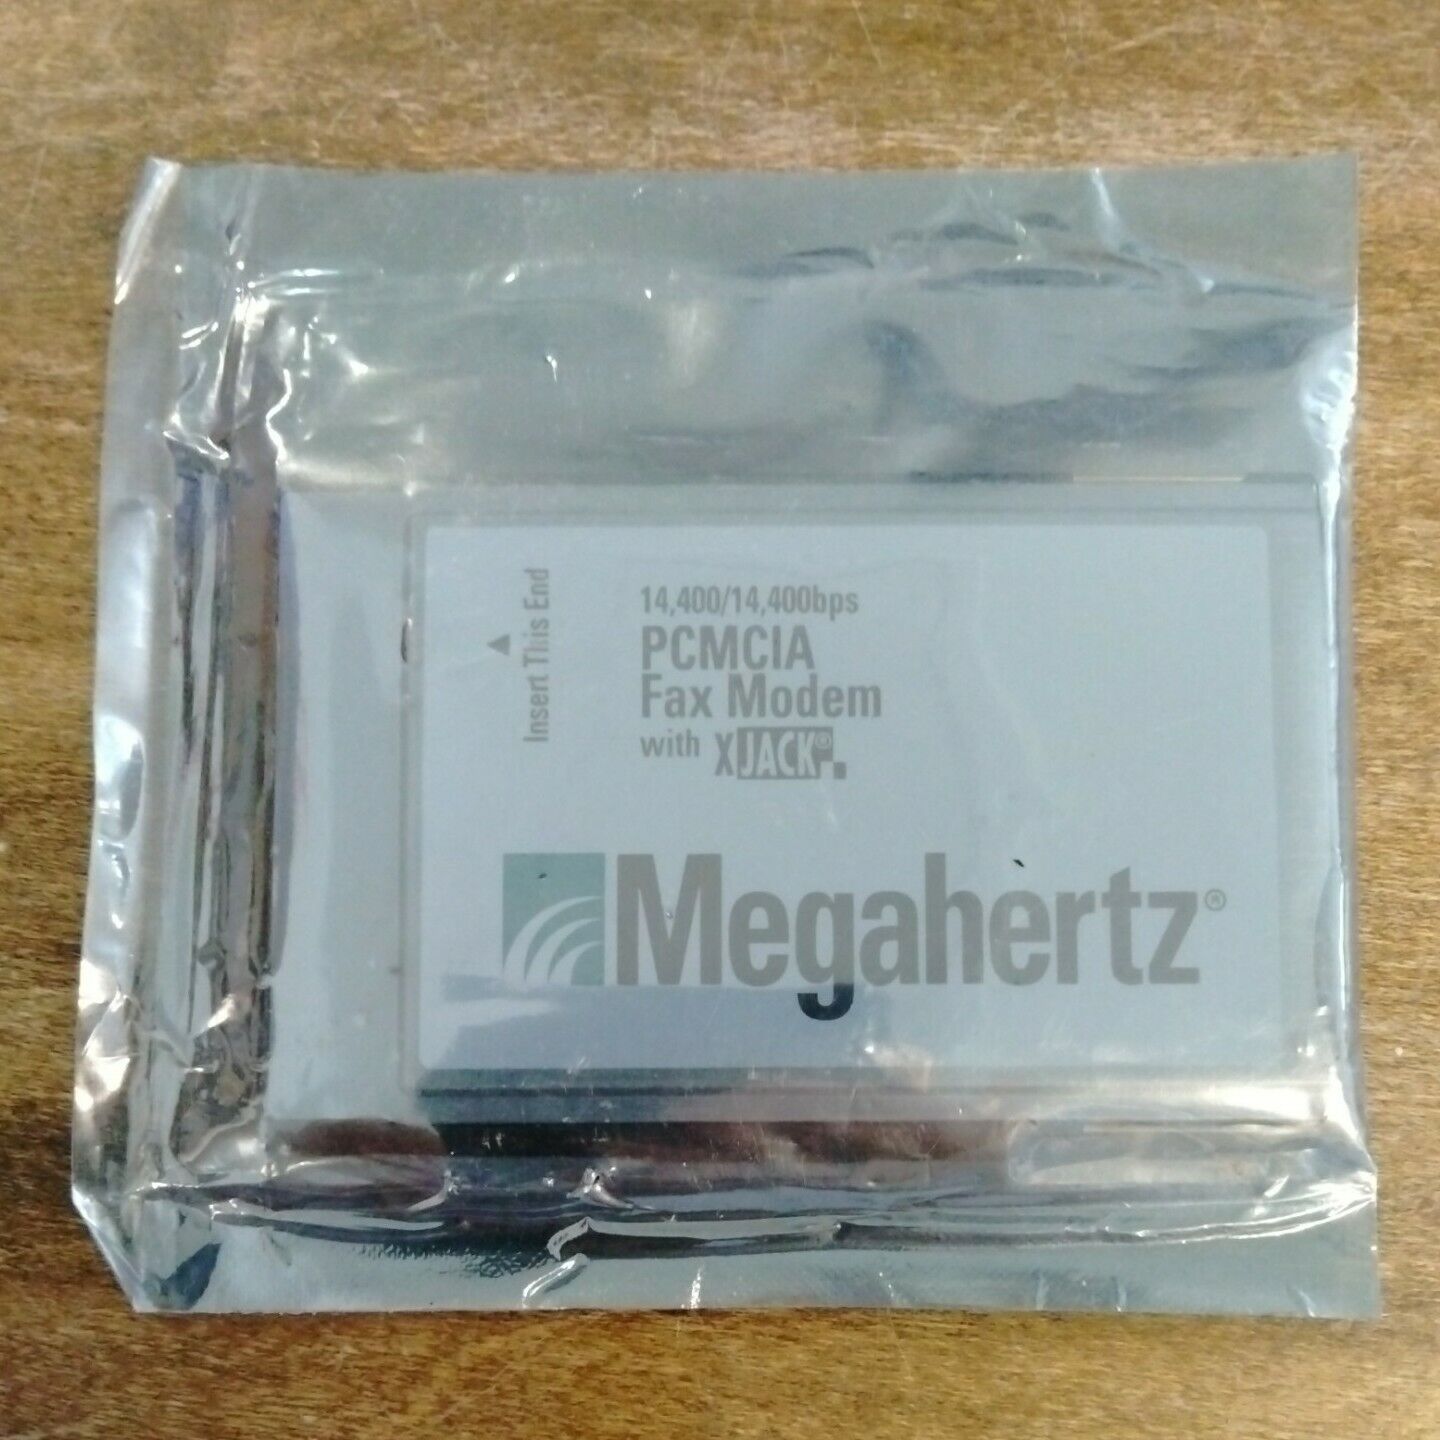 MEGAHERTZ PCMCIA FAX MODEM WITH XJACK XJ1144